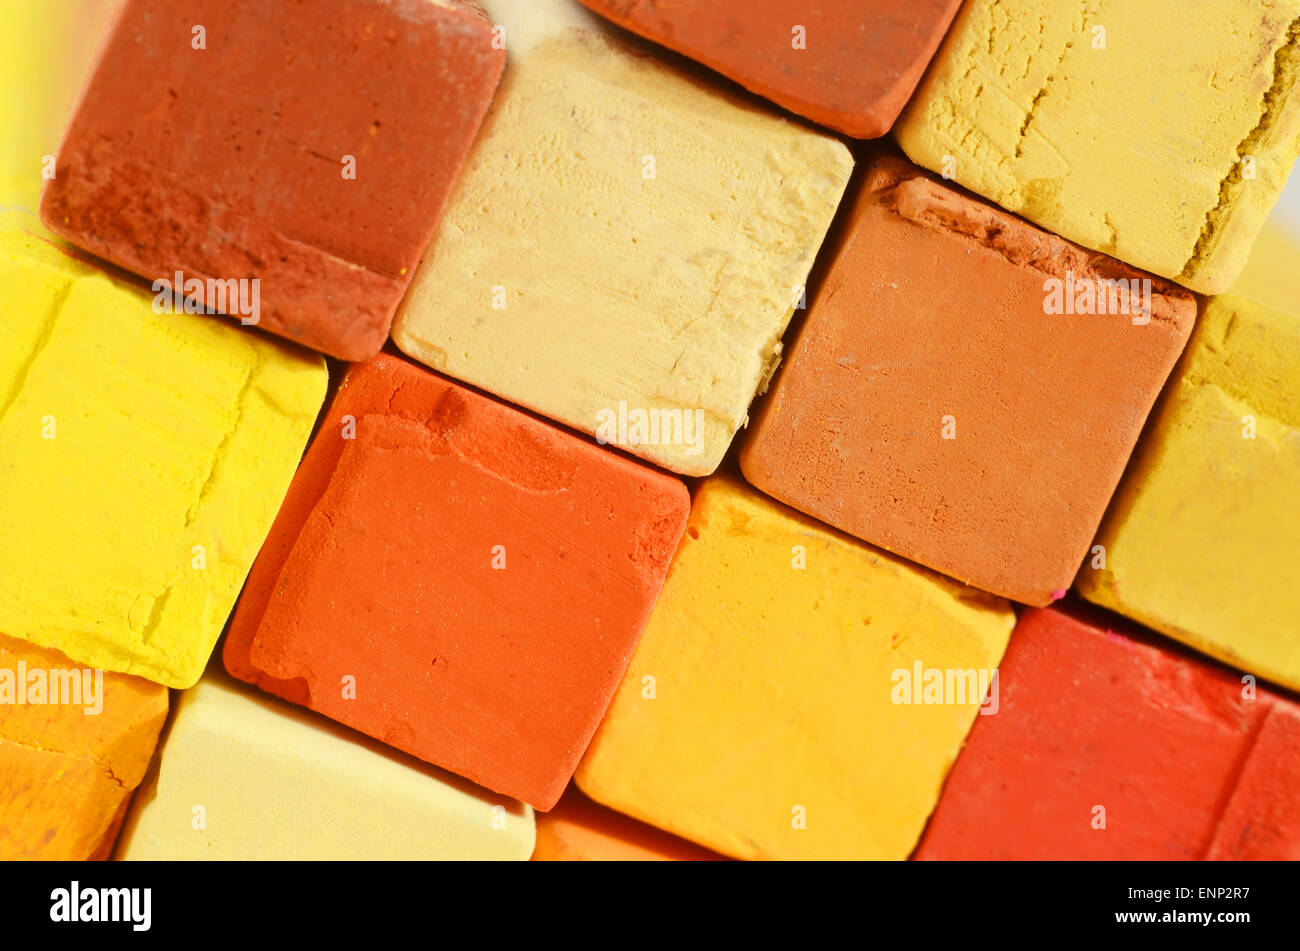 Creative art fond - libre de craies pastel lumineux de jaune, orange, couleurs rouge et ocre Banque D'Images